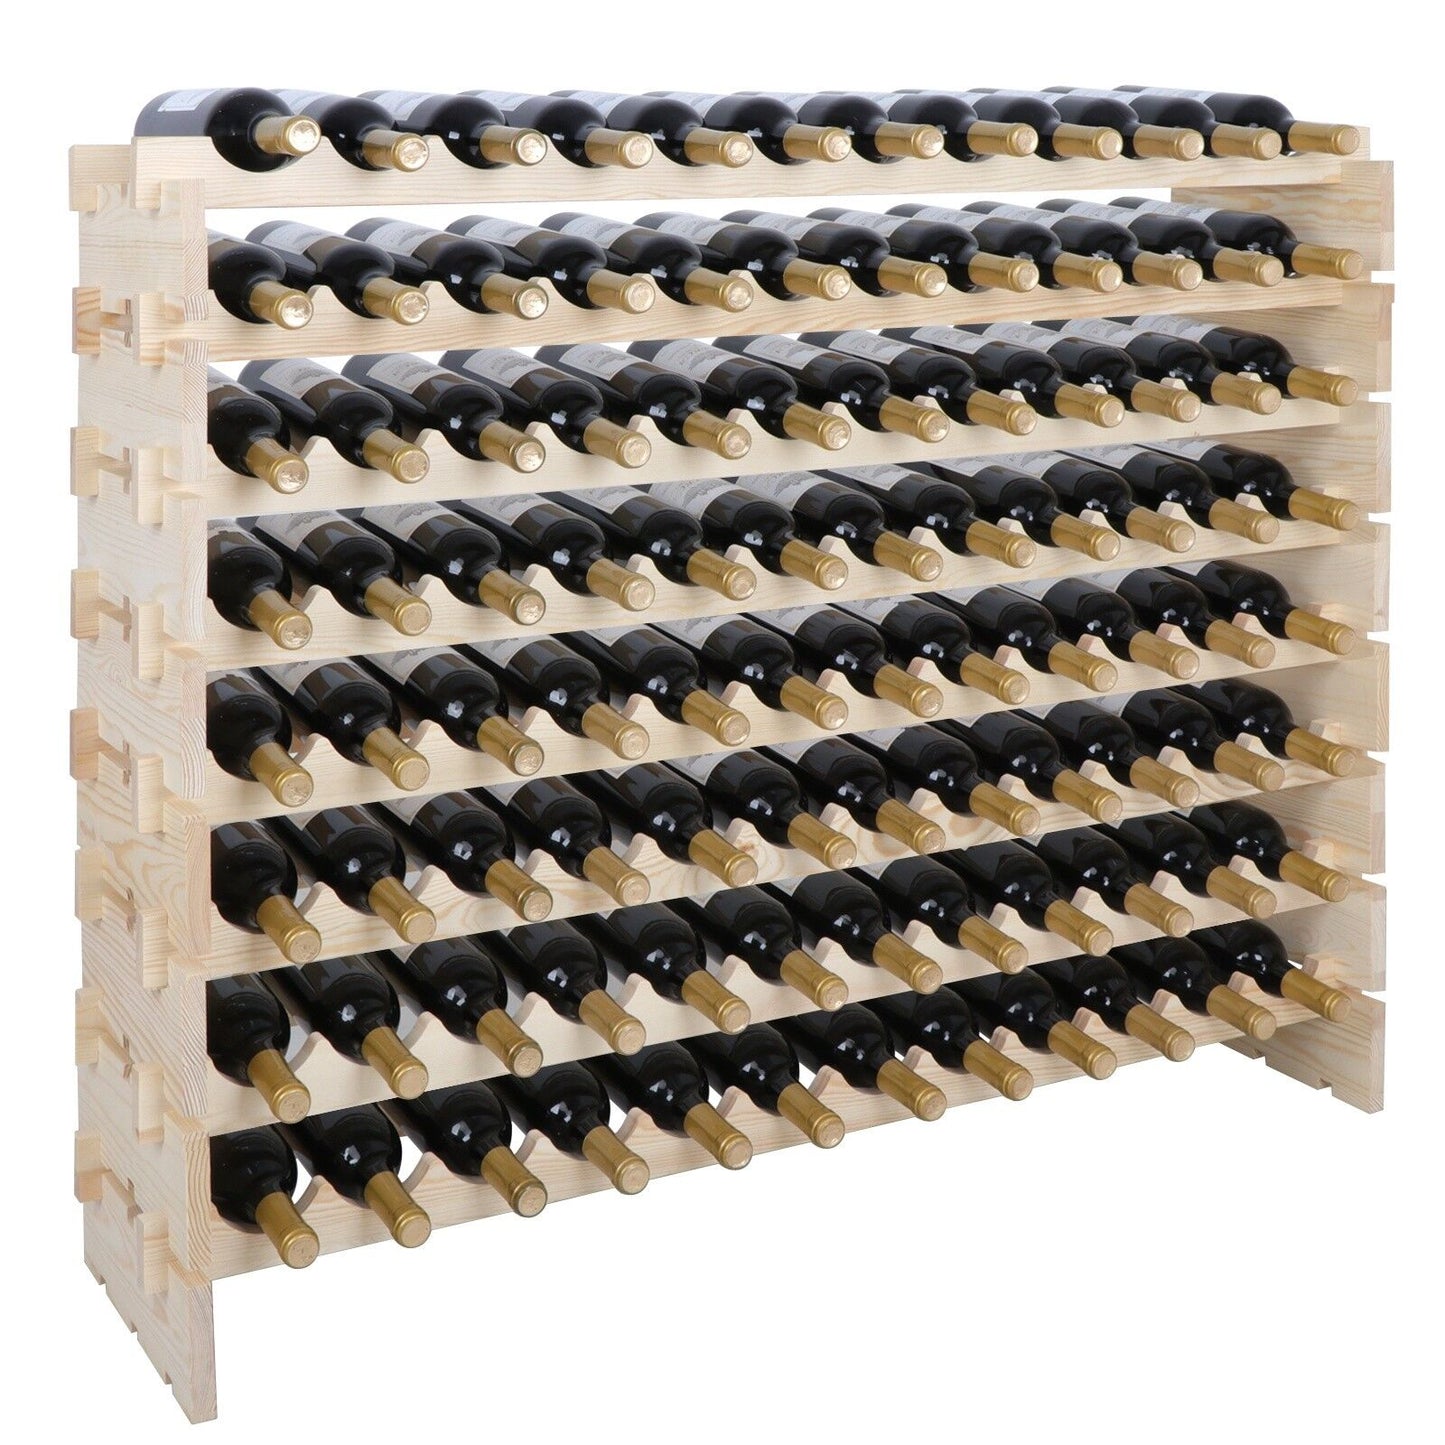 Stackable Wine Wooden Rack 96 Bottles Mount Holder Kitchen Exhibition Organizer